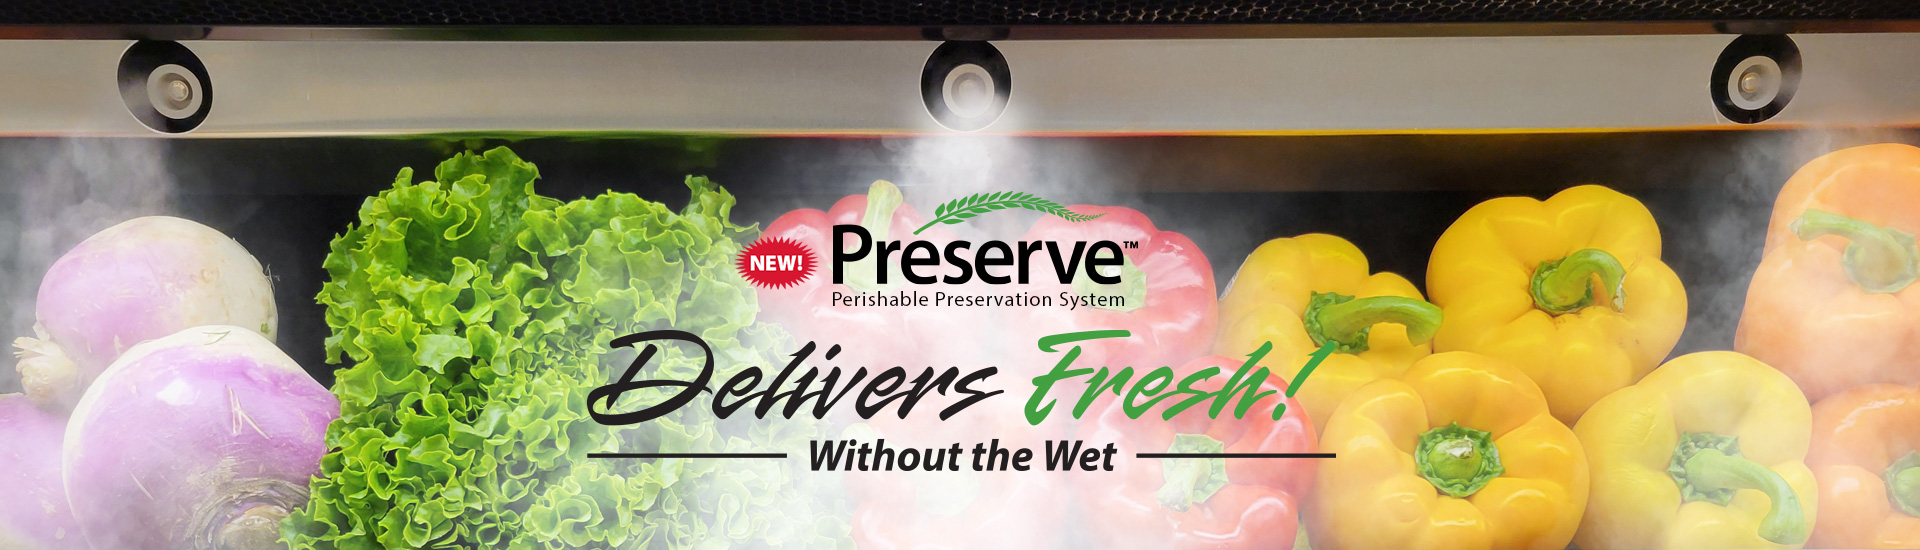 Préserve™ Perishable Preservation System Delivers Fresh Without the Wet